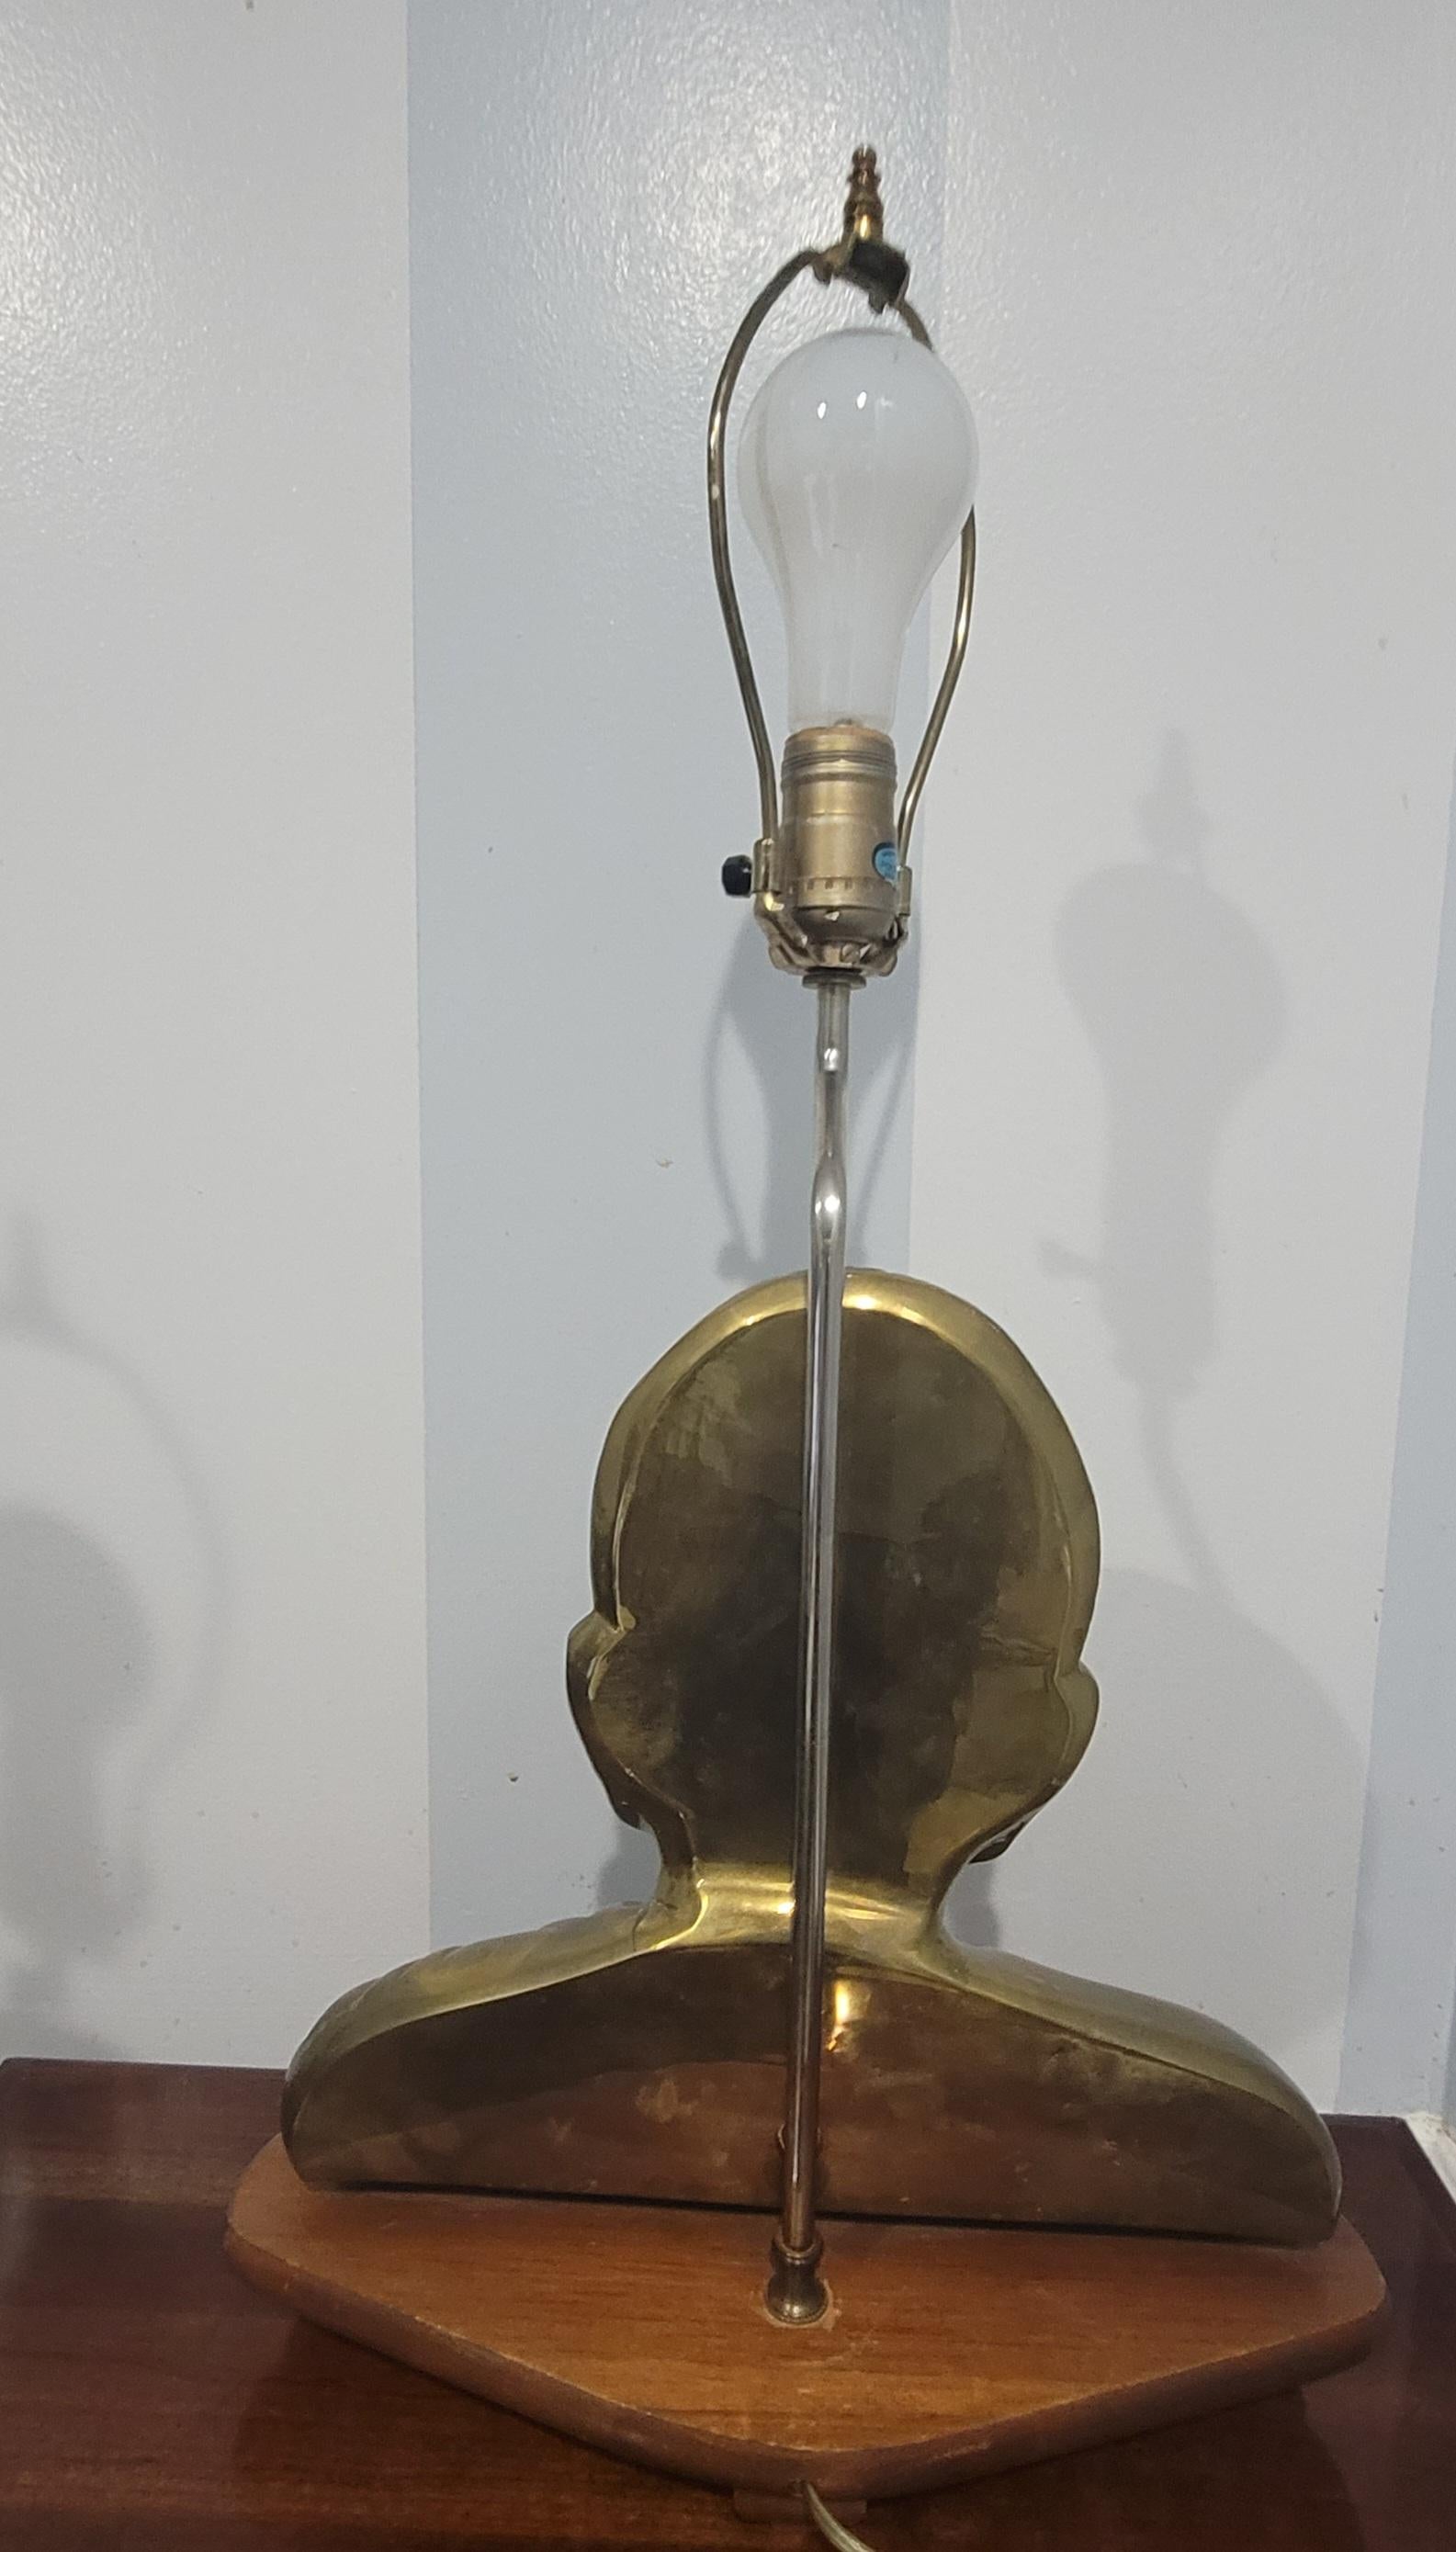 Une belle paire de lampes de table en bronze chinois avec un buste de Bouddha sur une base en bois.
Mesure 15 